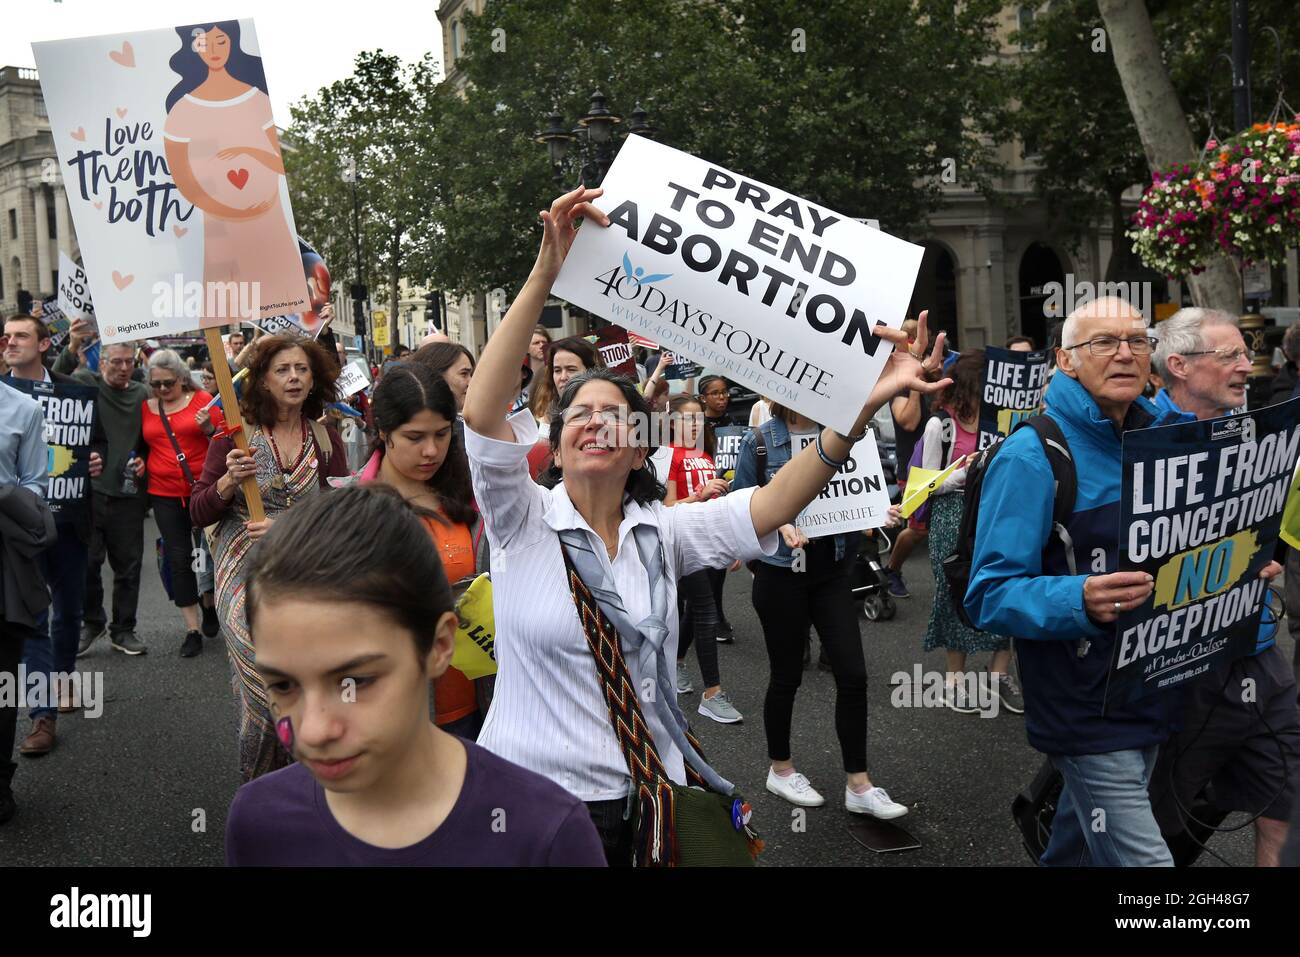 Londres, Royaume-Uni. 04e septembre 2021. Les manifestants tiennent des pancartes tandis que des milliers de partisans de la vie se réunissent pour la marche annuelle pour la vie au Royaume-Uni. Ils appellent à la fin de l'avortement car ils croient que la vie commence à la conception. La marche fait suite à une interdiction de l'avortement pour la plupart des femmes au Texas, aux États-Unis, au début du mois de septembre. Crédit : SOPA Images Limited/Alamy Live News Banque D'Images